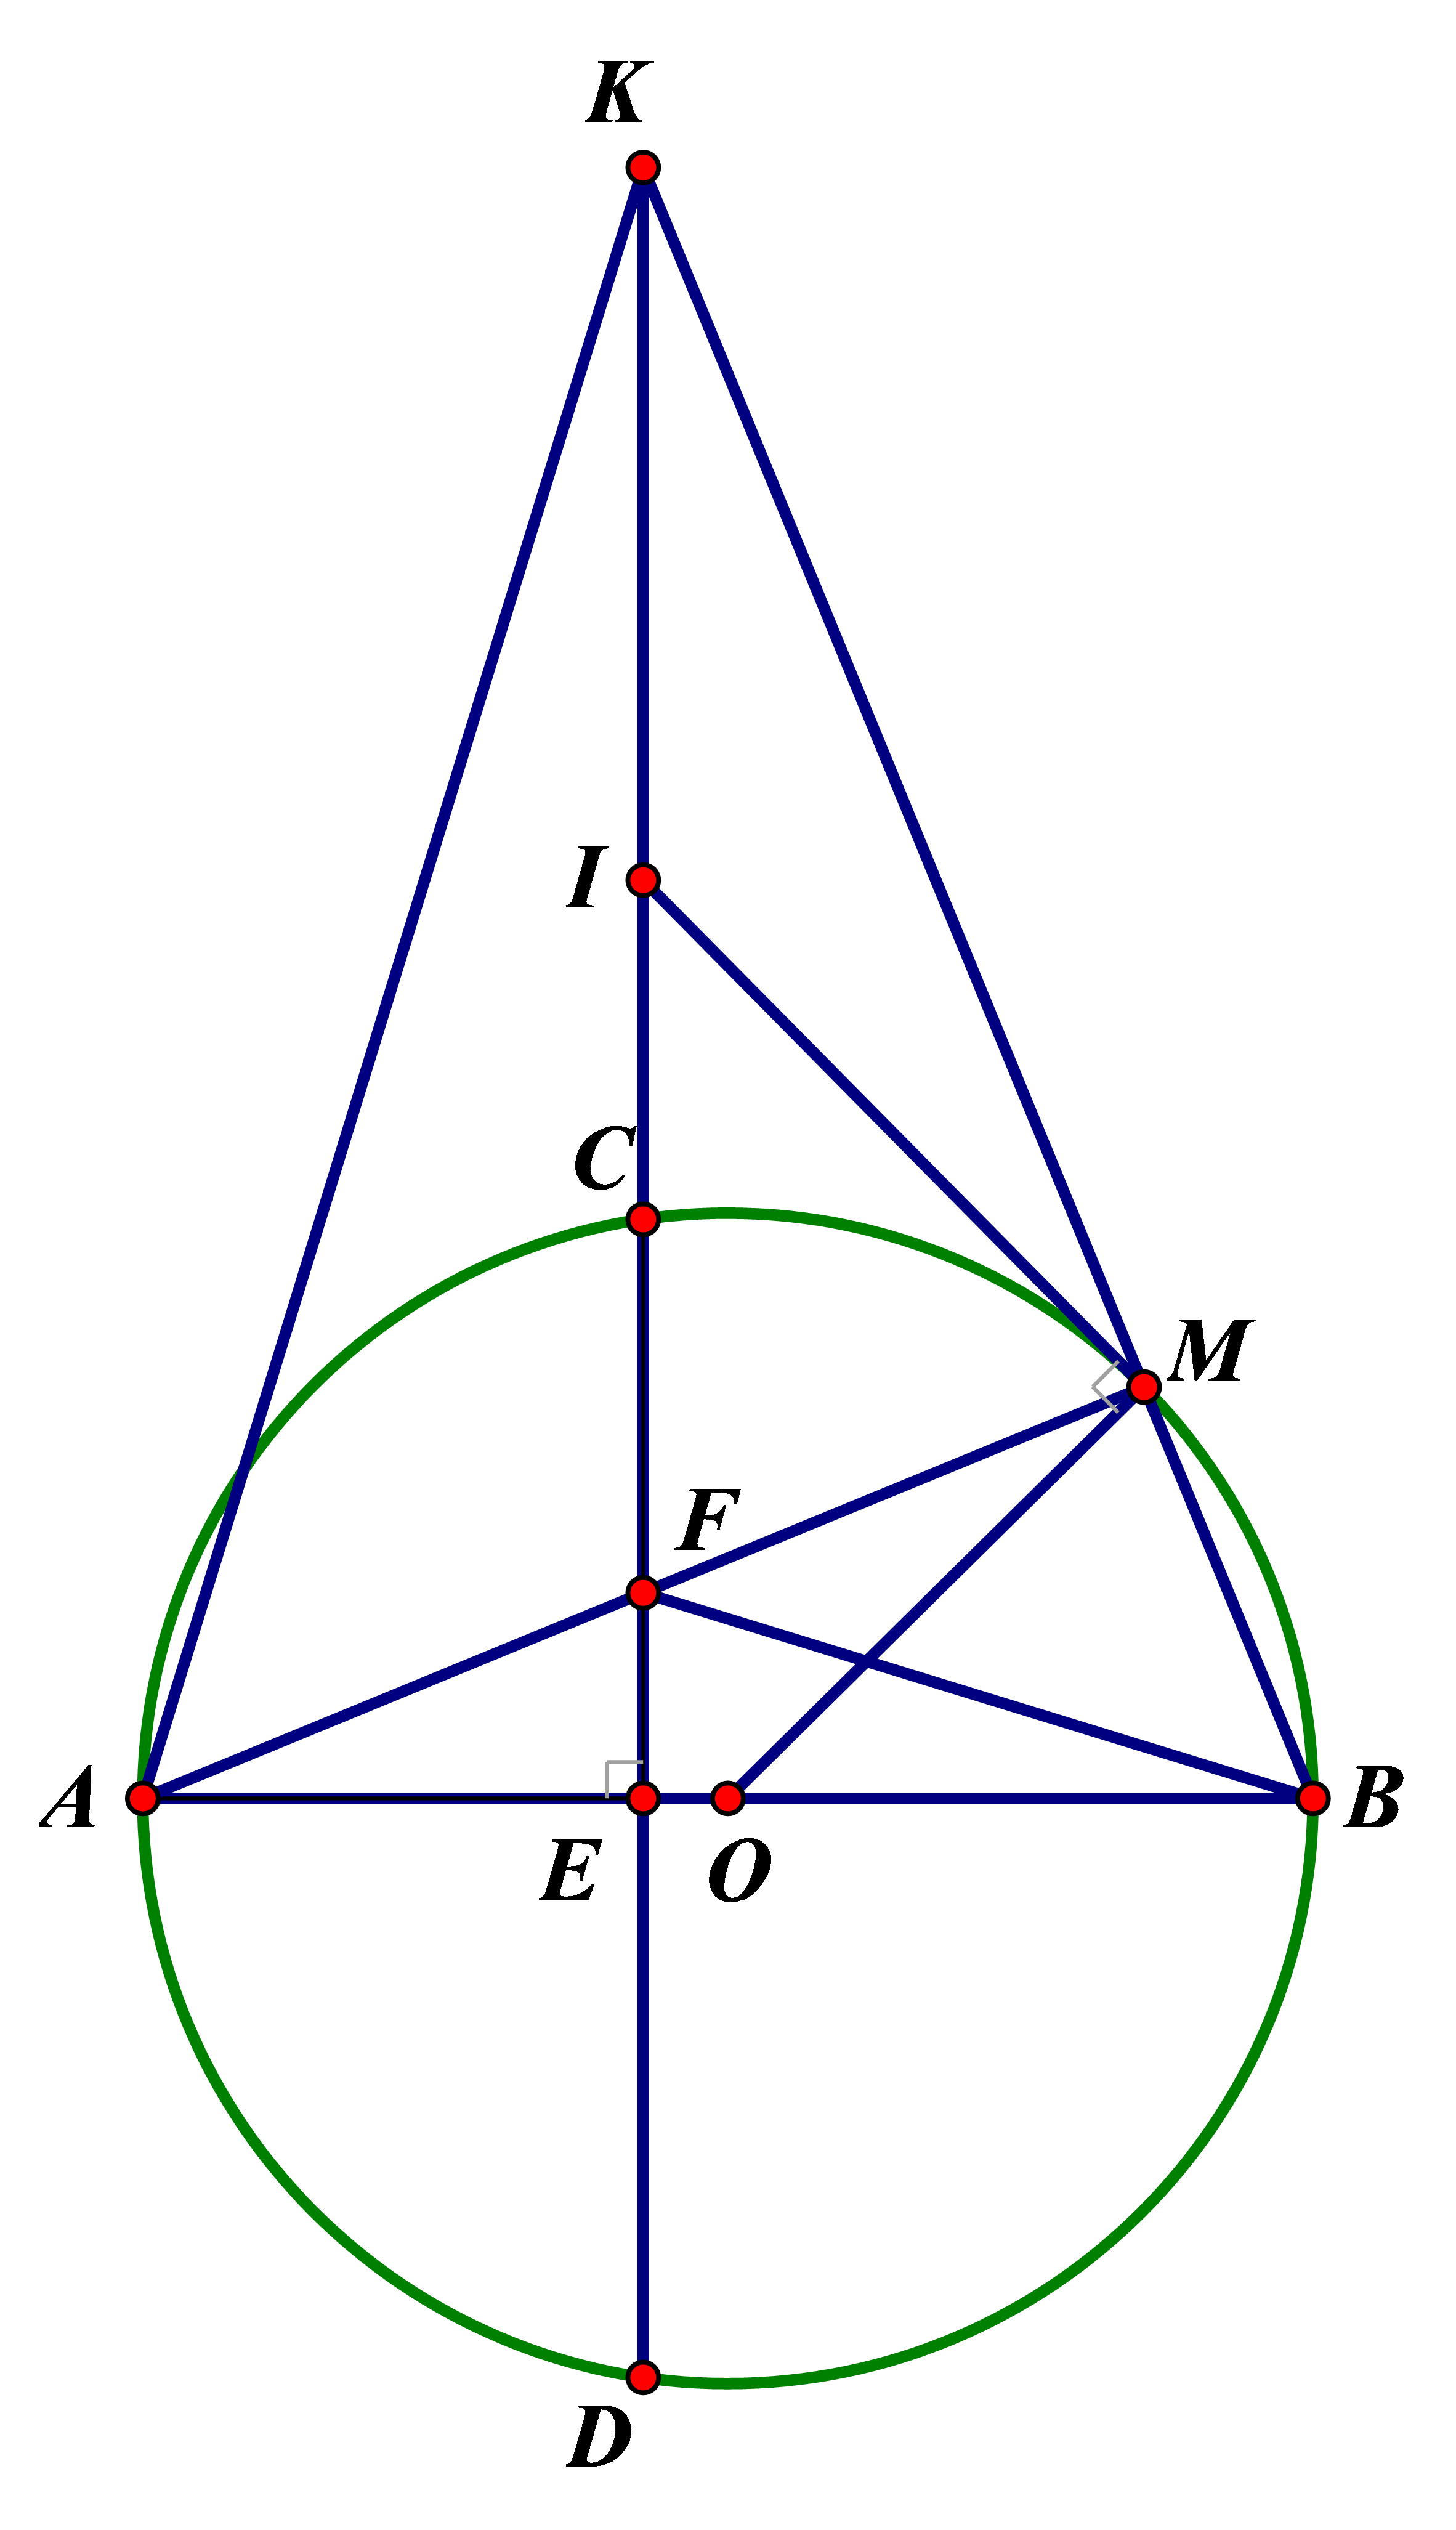 Cho đường tròn tâm O đường kính AB. Dây CD vuông góc với AB tại E (E nằm giữa A và O; E không trùng A, không trùng O). Lấy điểm M thuộc cung nhỏ BC sao cho cung MB nhỏ hơn cung MC. Dây AM cắt CD tại F. Tia BM cắt đường thẳng CD tại K. 1) Chứng minh tứ giác BMFE nội tiếp. 2) Chứng minh BF vuông góc với AK và EK.EF = EA.EB 3) Tiếp tuyến của (O) tại M cắt tia KD tại I. Chứng minh IK = IF. (ảnh 1)